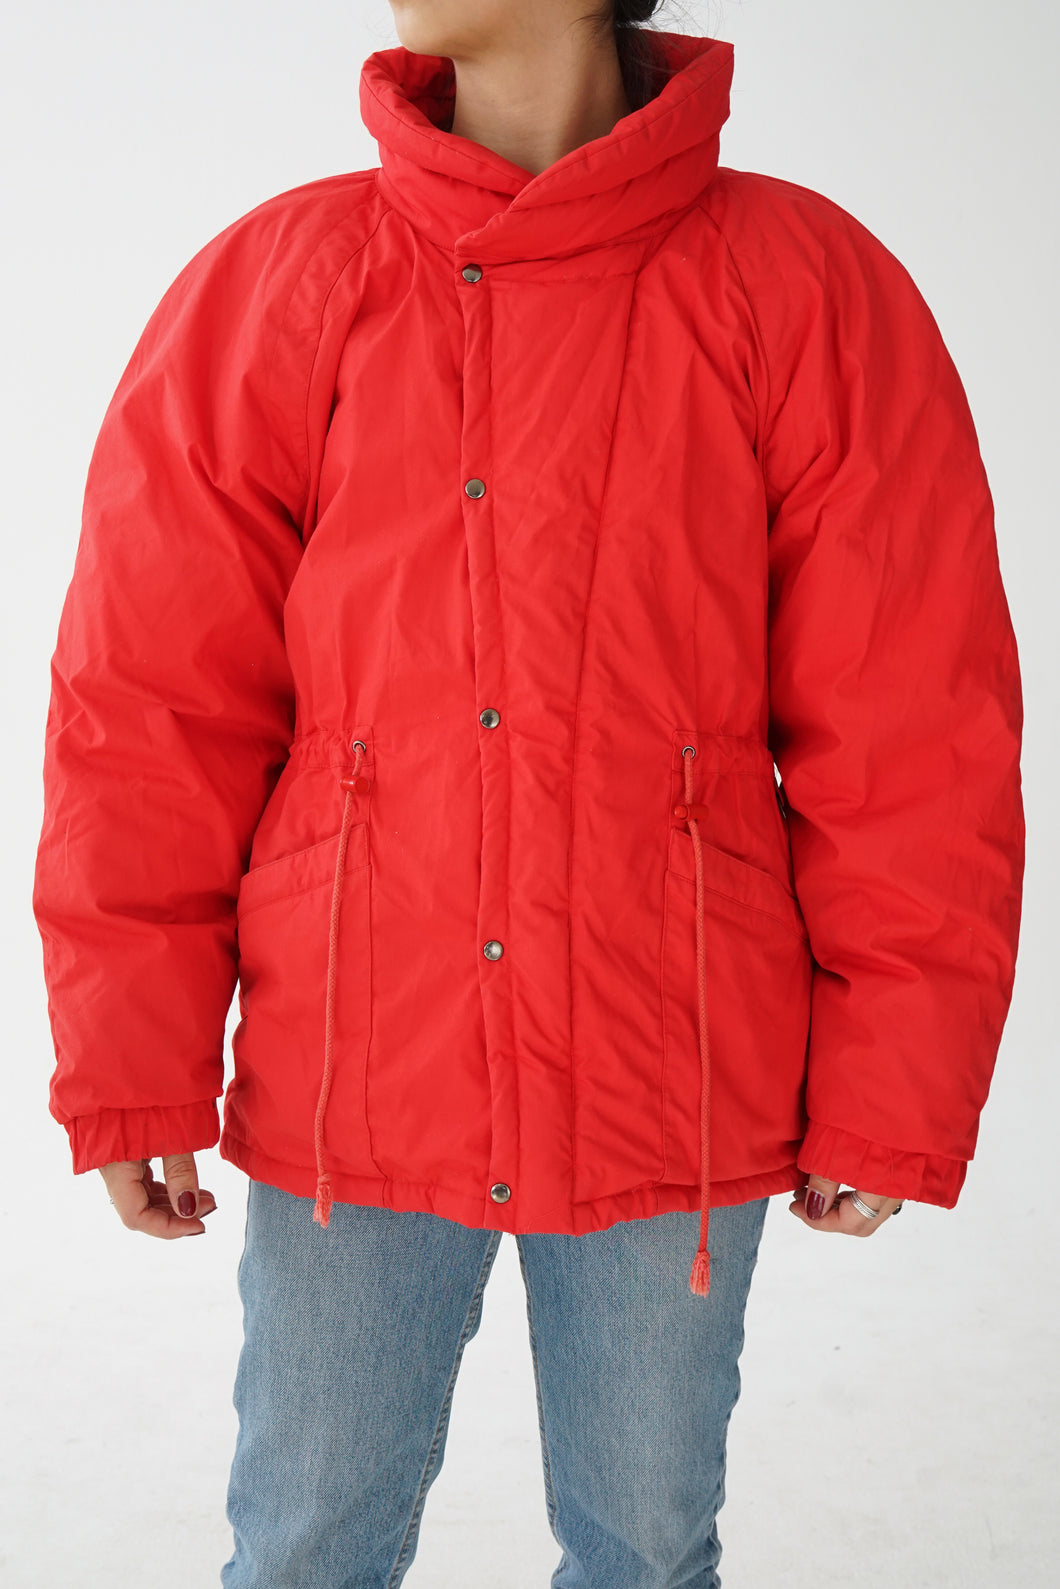 Manteau en duvet Sportstop rouge unisex taille M-L